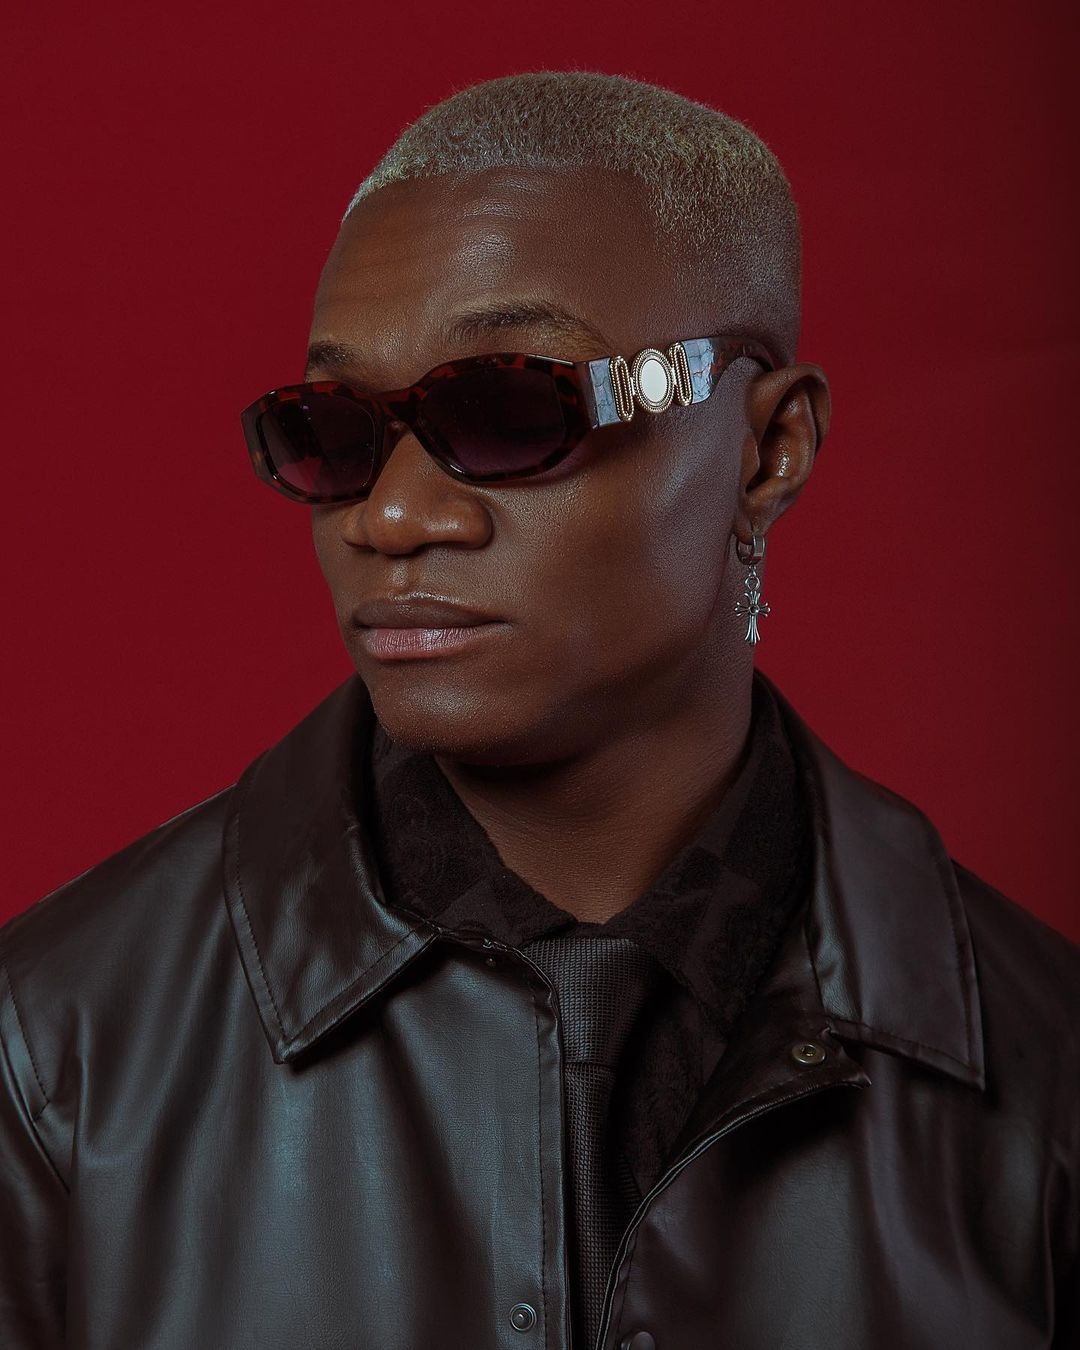 Dj Black Spygo trorna-se o artista angolano mais ouvido em Angola no Spotify em 2022